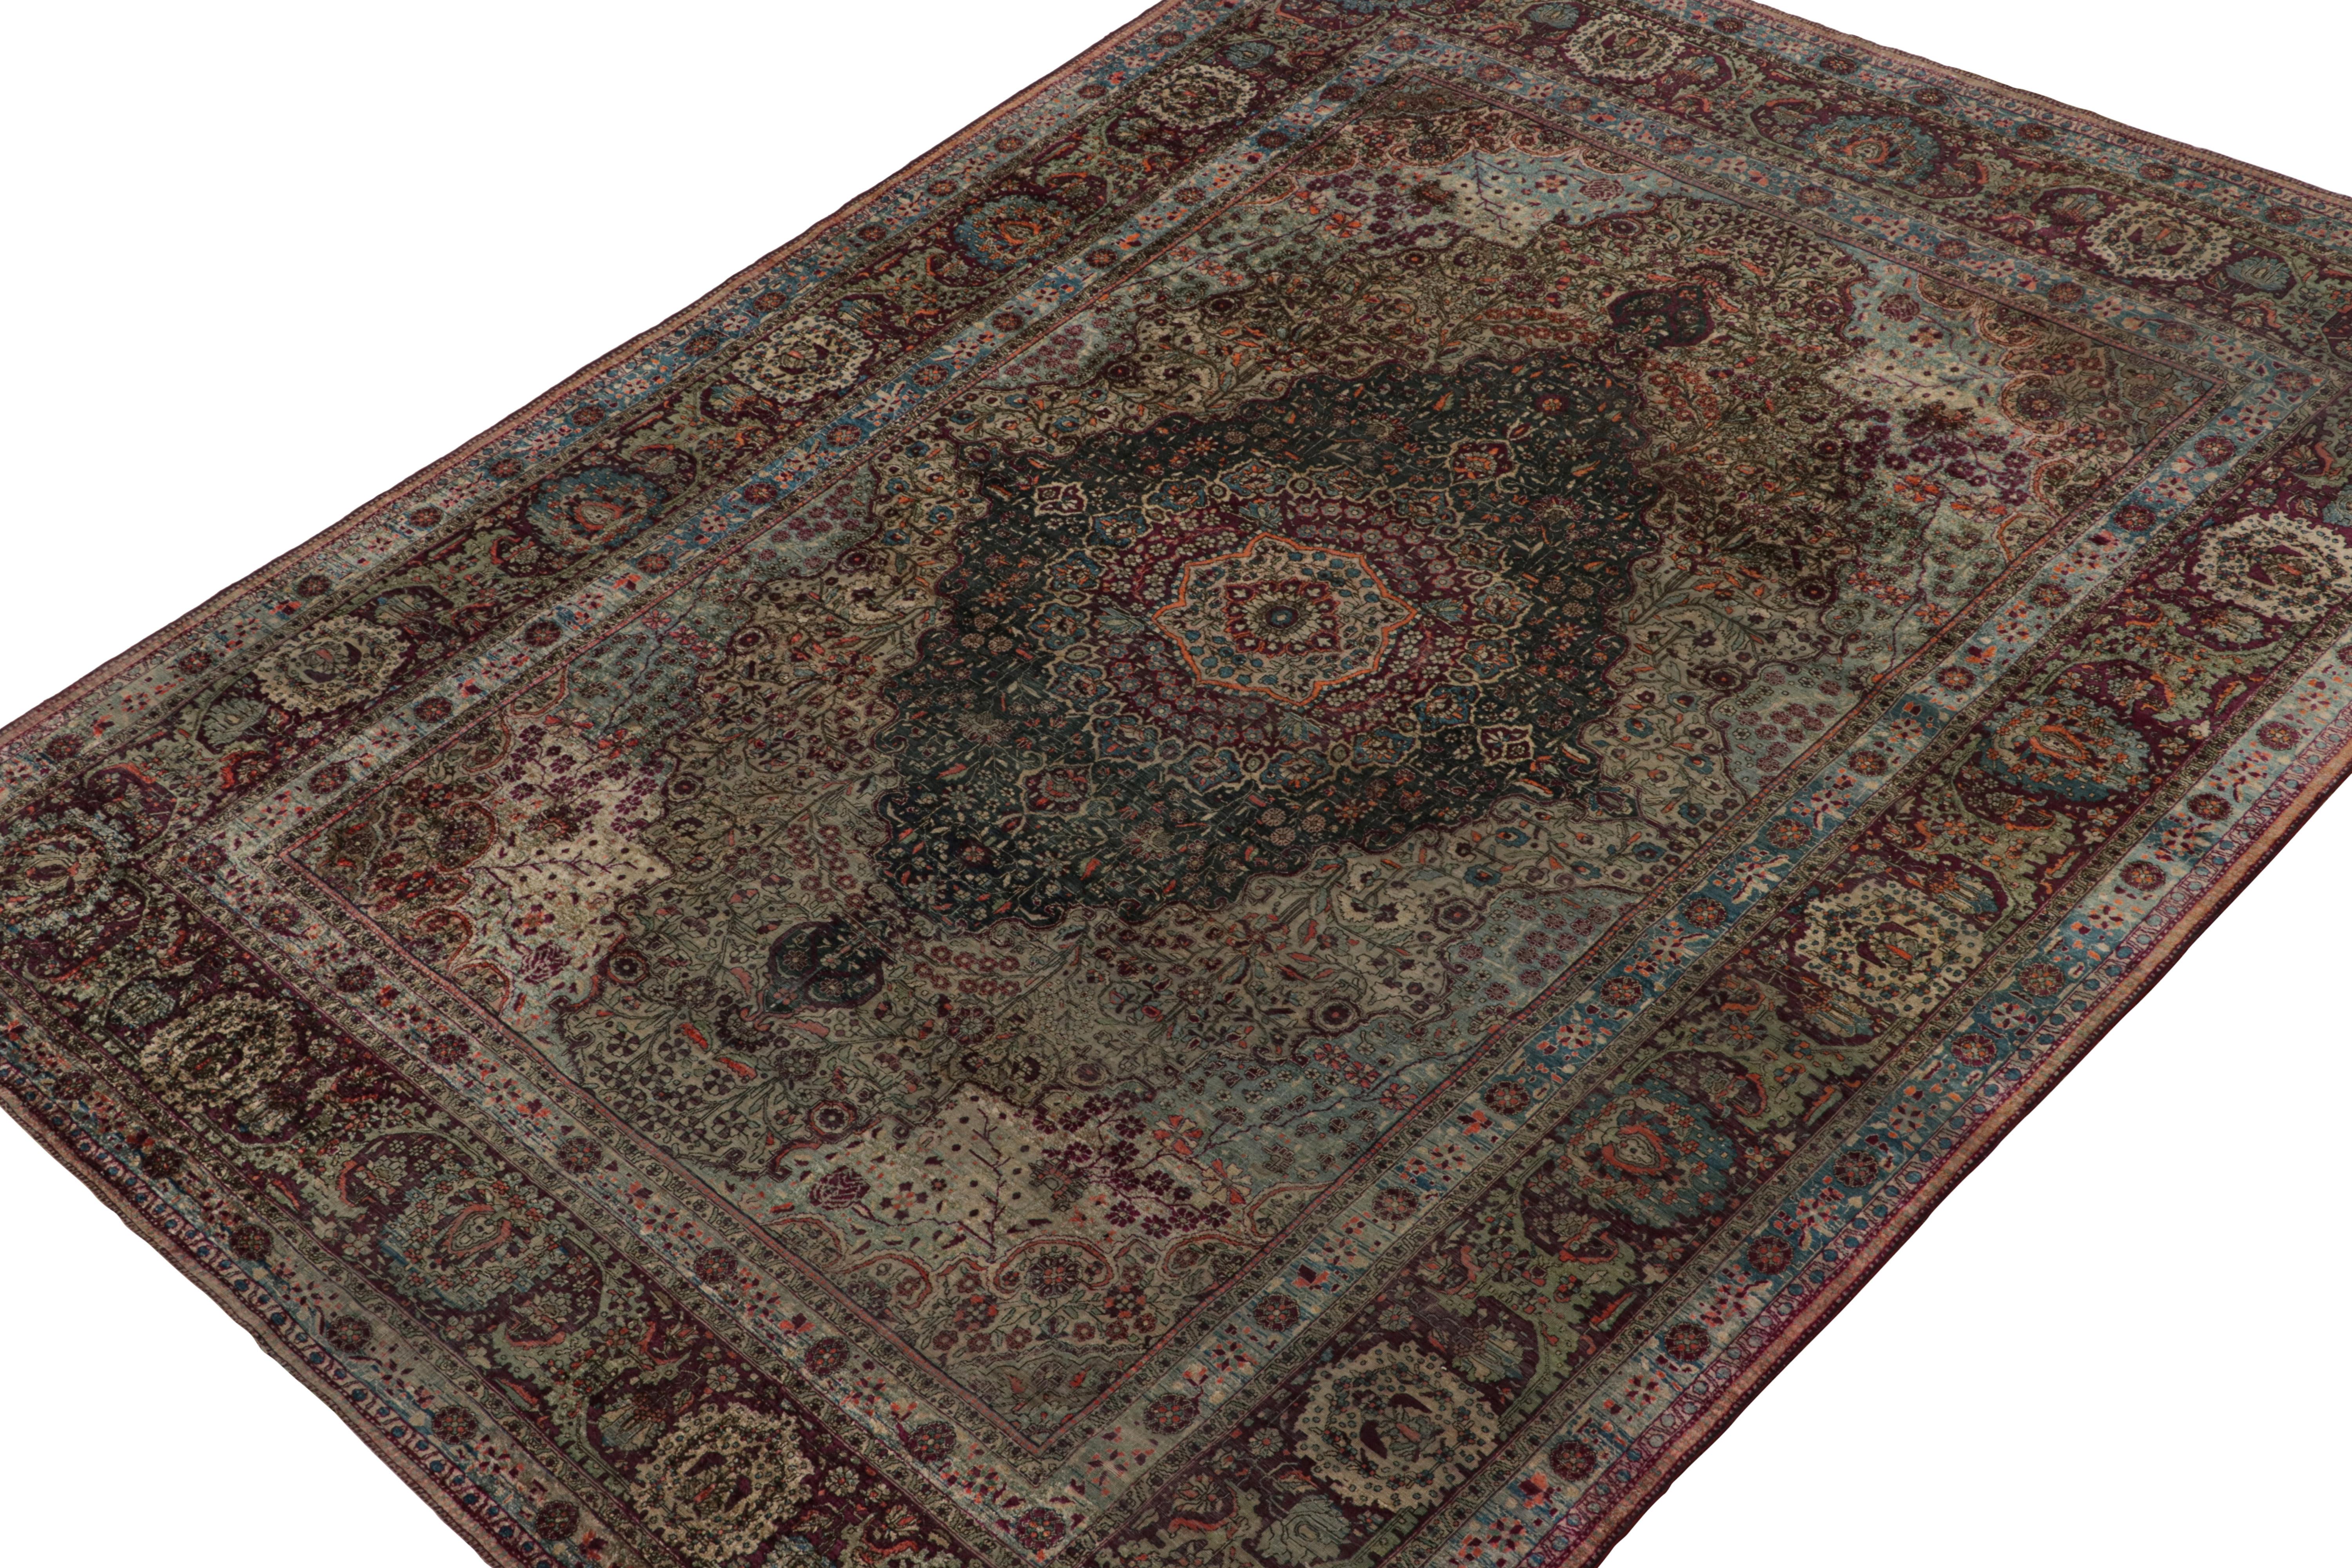 Dieser 8x11 große Teppich ist vermutlich ein seltener antiker Perserteppich der Provenienz Mohtashem Kashan, handgeknüpft aus feiner Seide um 1880-1890. 

Über das Design: 

Dieses Stück weist ein dichtes, florales Muster in konzentrischen